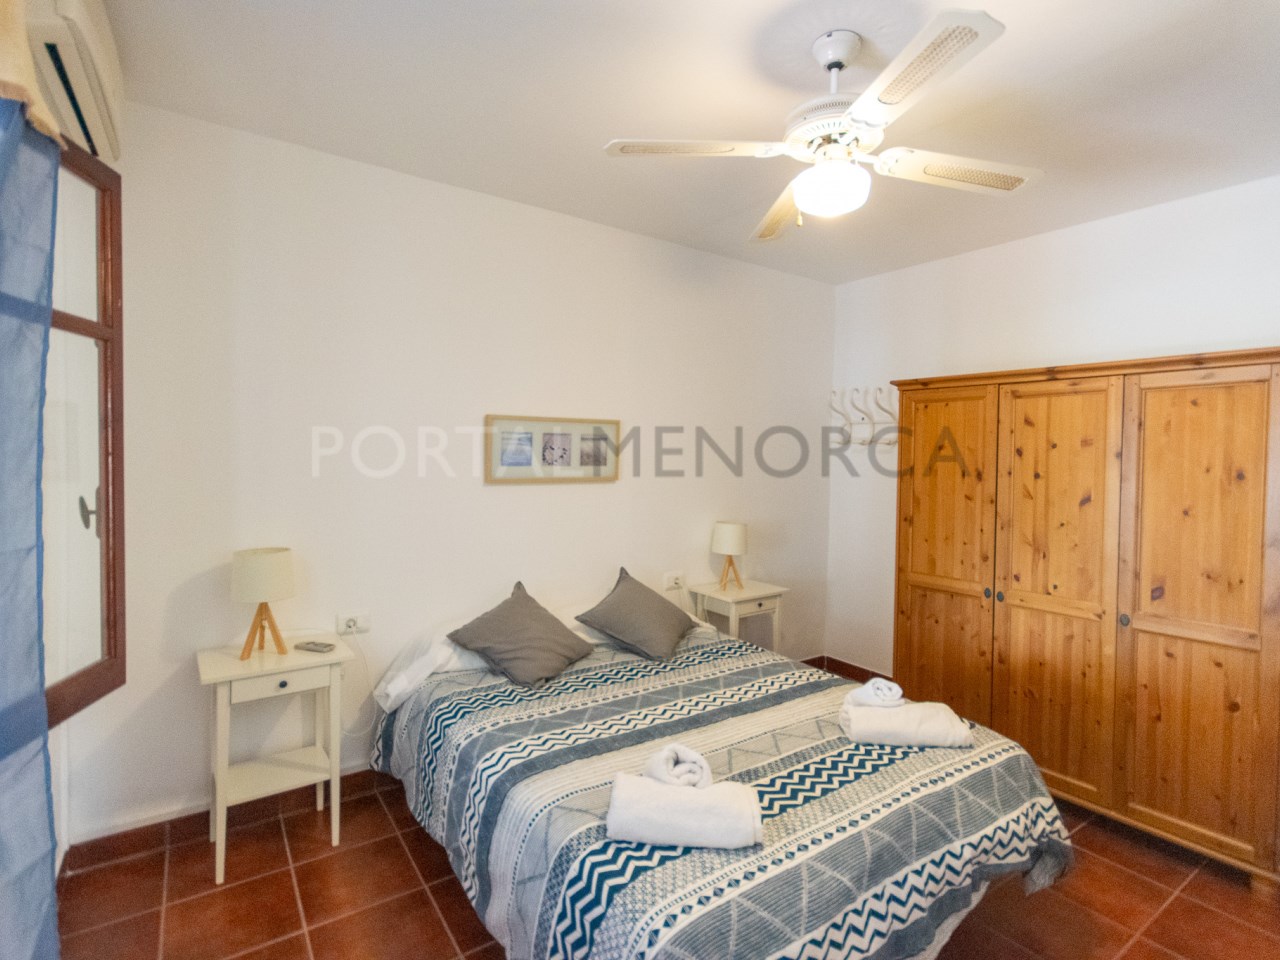 Dormitorio de un chalet con licencia turística en venta en Cala n Bosch